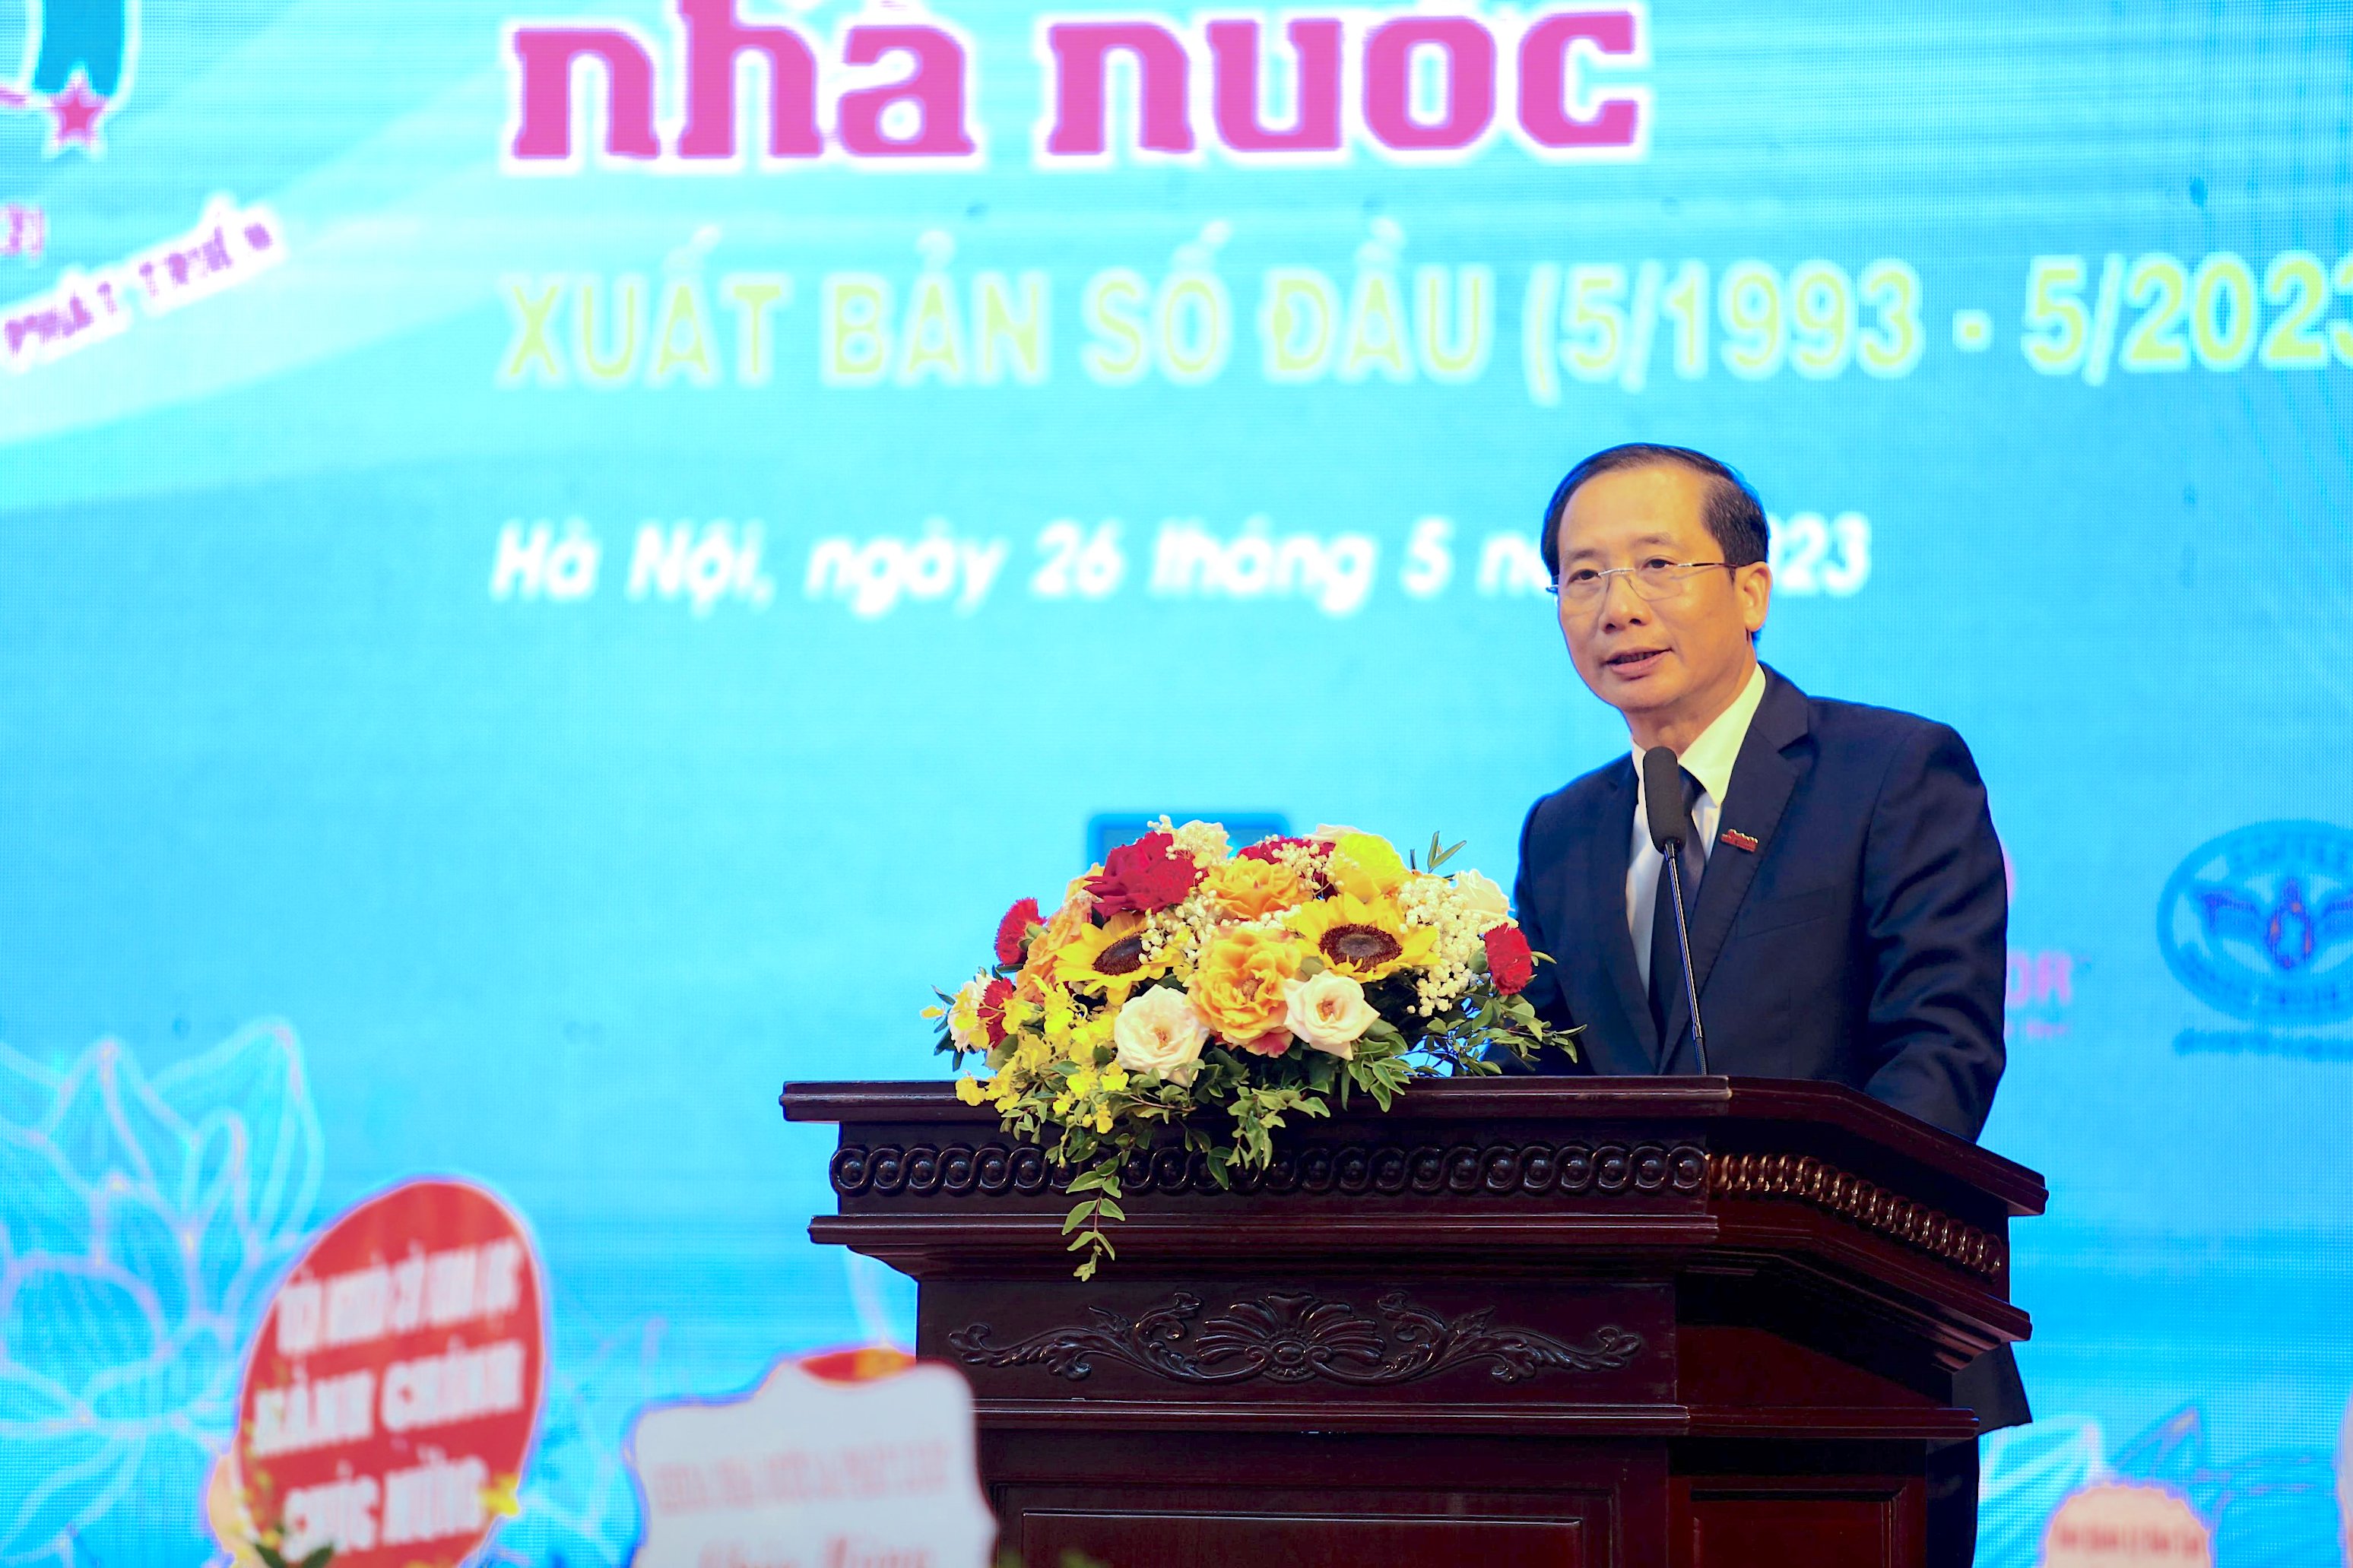 Đồng chí Nguyễn Bá Chiến, Giám đốc Học viện phát biểu tại buổi lễ.